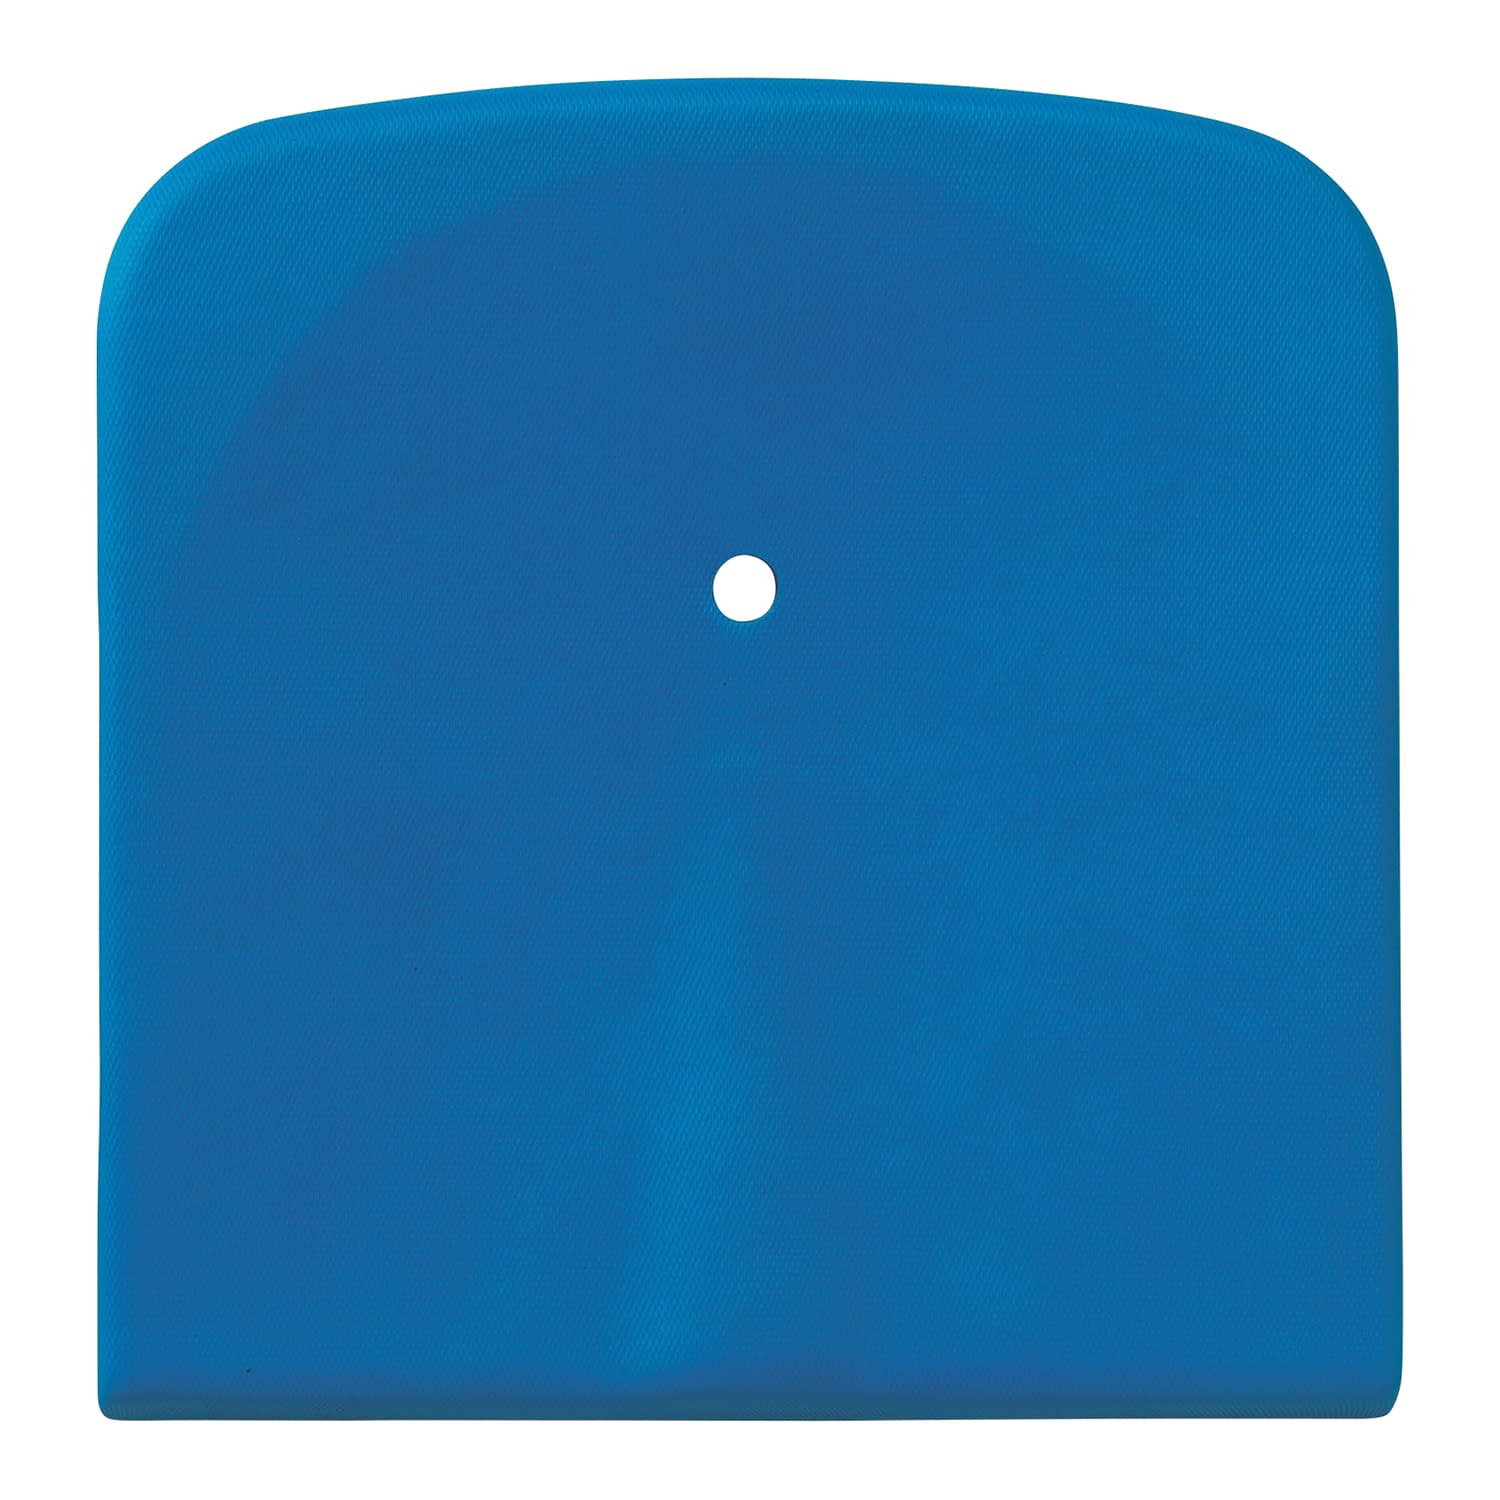 折りたたむと自立し、大変コンパクトになるので自動車のトランクに積むことができます。肘掛けの前方グリップを握って座位を保つことができ、前倒れも防ぎます。フットレストは片側ずつ簡単に脱着できますので、立ち座りの時に邪魔になりません。カラー：カラー,ブルー 製品サイズ：幅37×奥行40×厚さ4cm 個装入数：1枚松吉医科器械｜総合カタログ｜医療・介護・ドクター・ナース